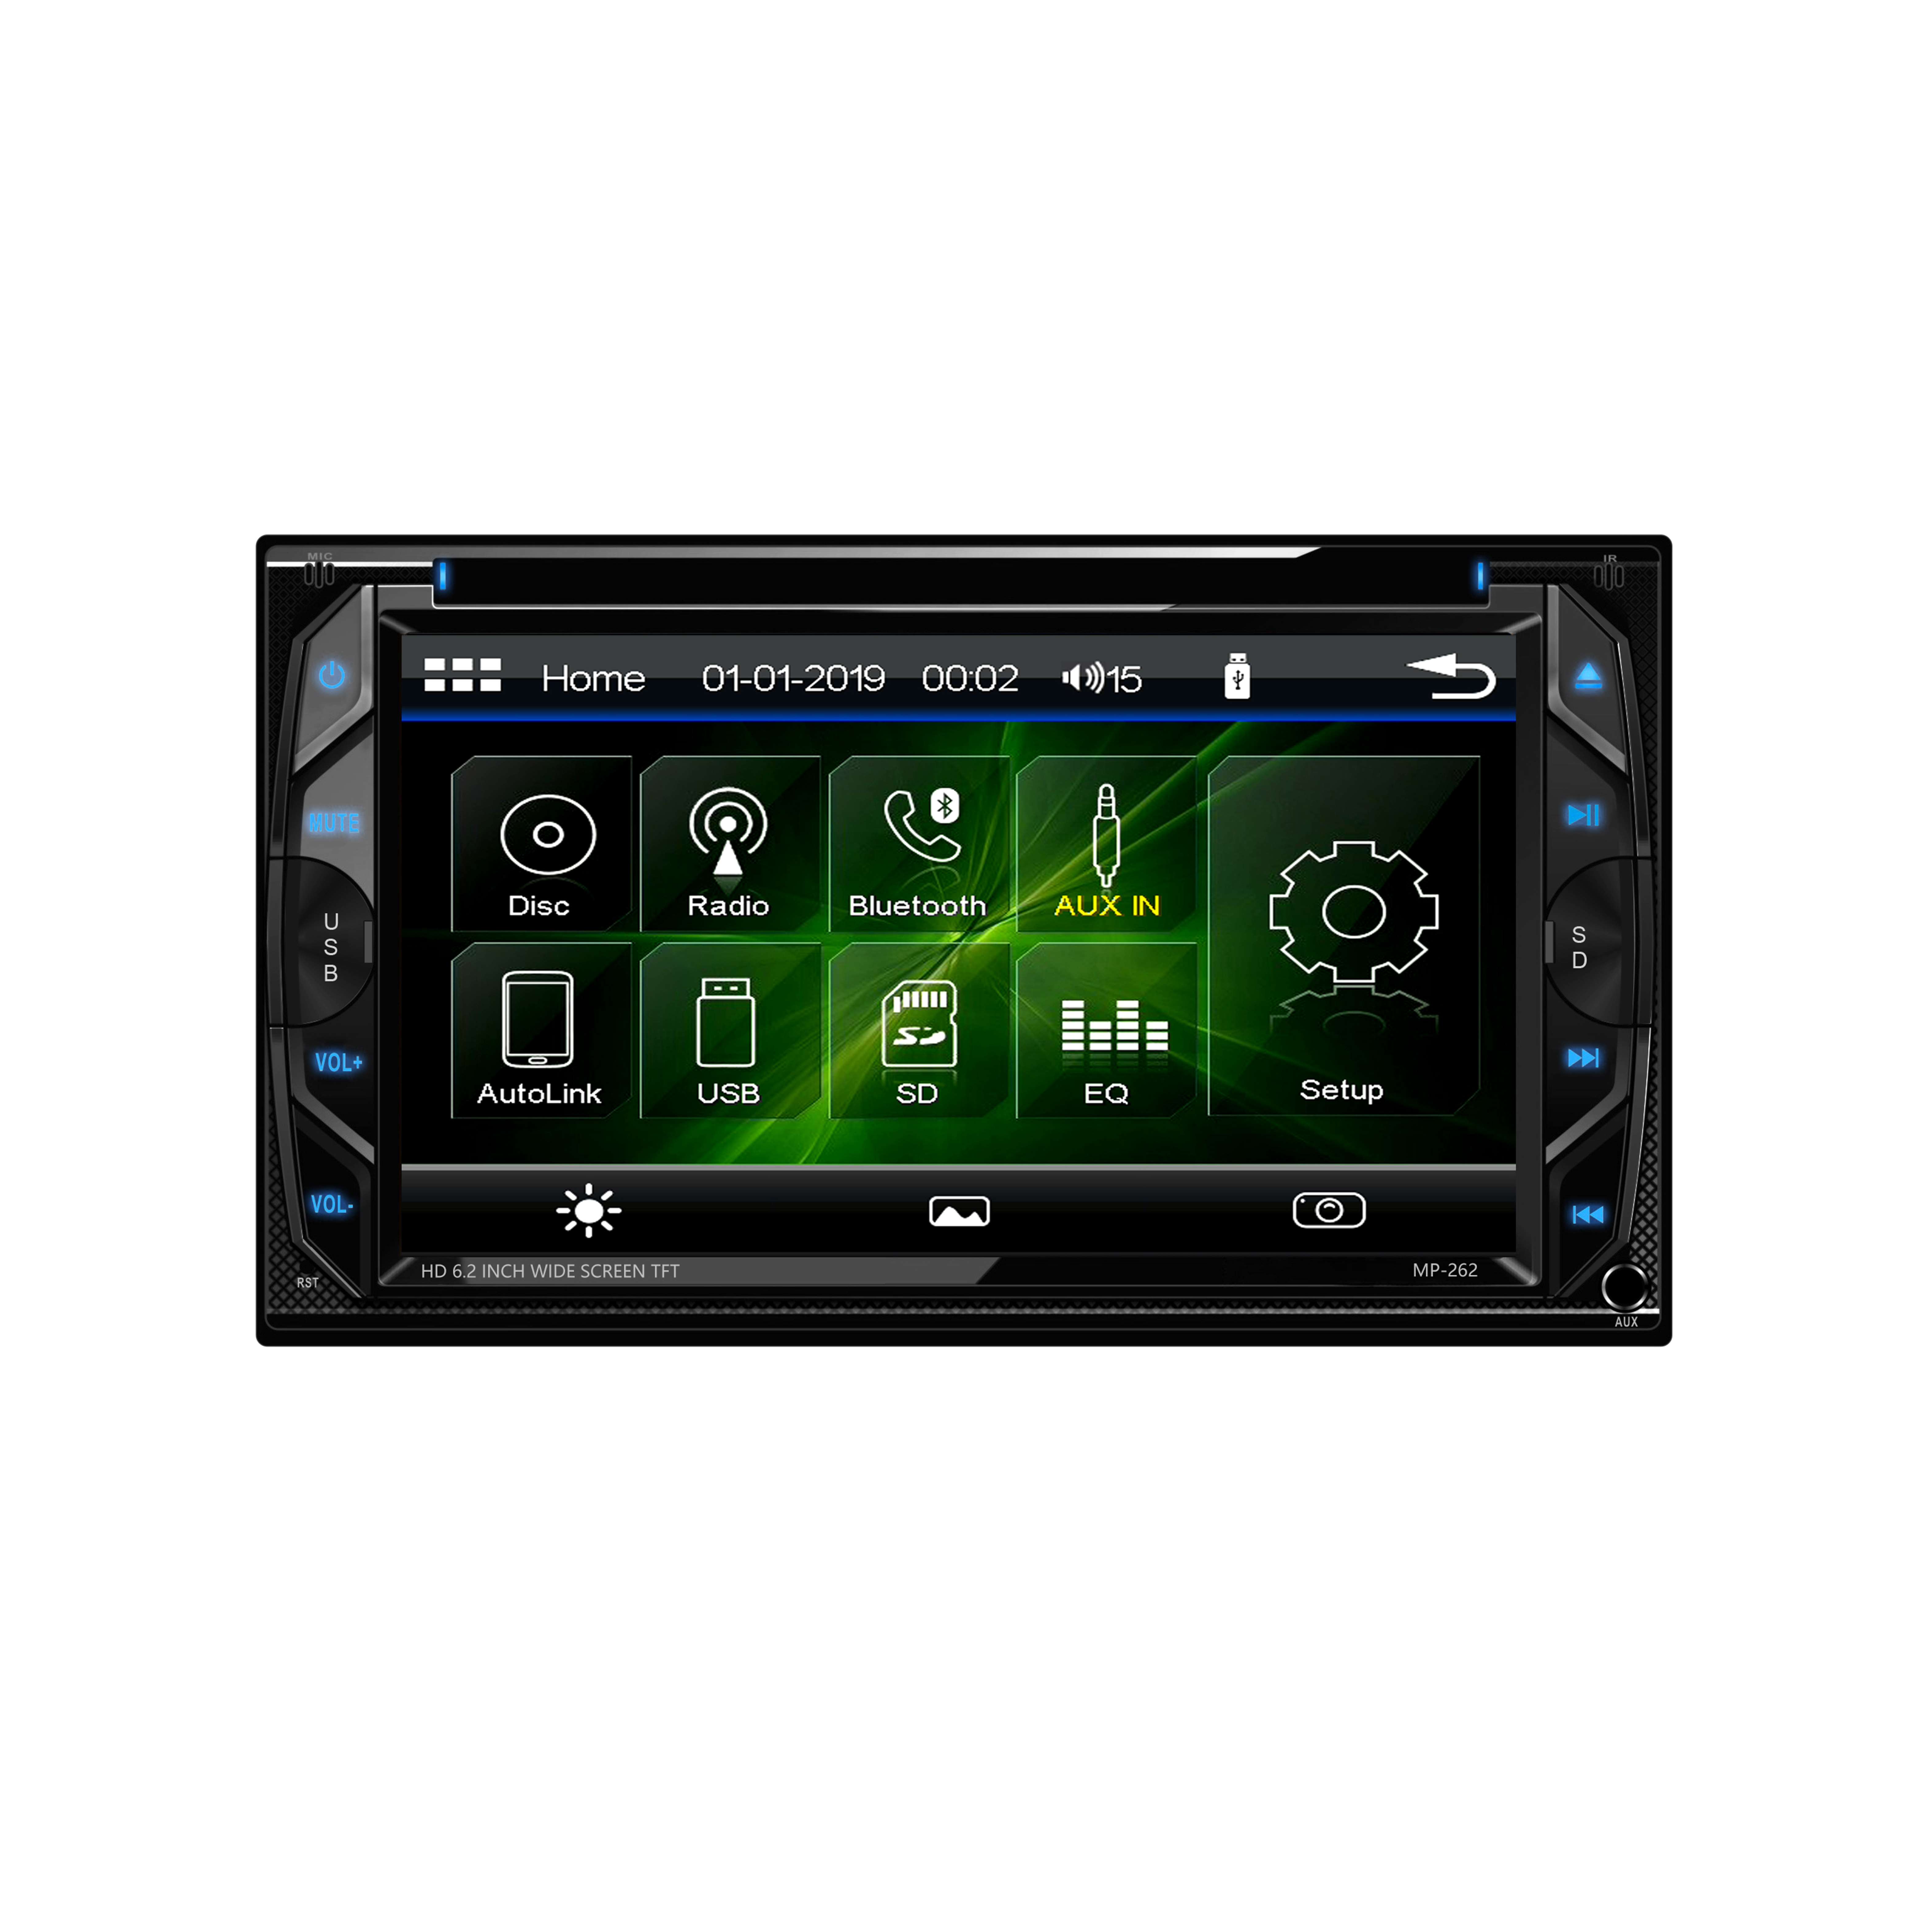 Çift dokunmatik ekran radyo çift din arabası dvd bluetooth ses/eller serbest arama 6.2 inç dokunmatik ekranlı lcd monitör, mp3 çalar, cd, dvd, usb bağlantı noktası, sd, aux giriş, am/fm radyo alıcısı